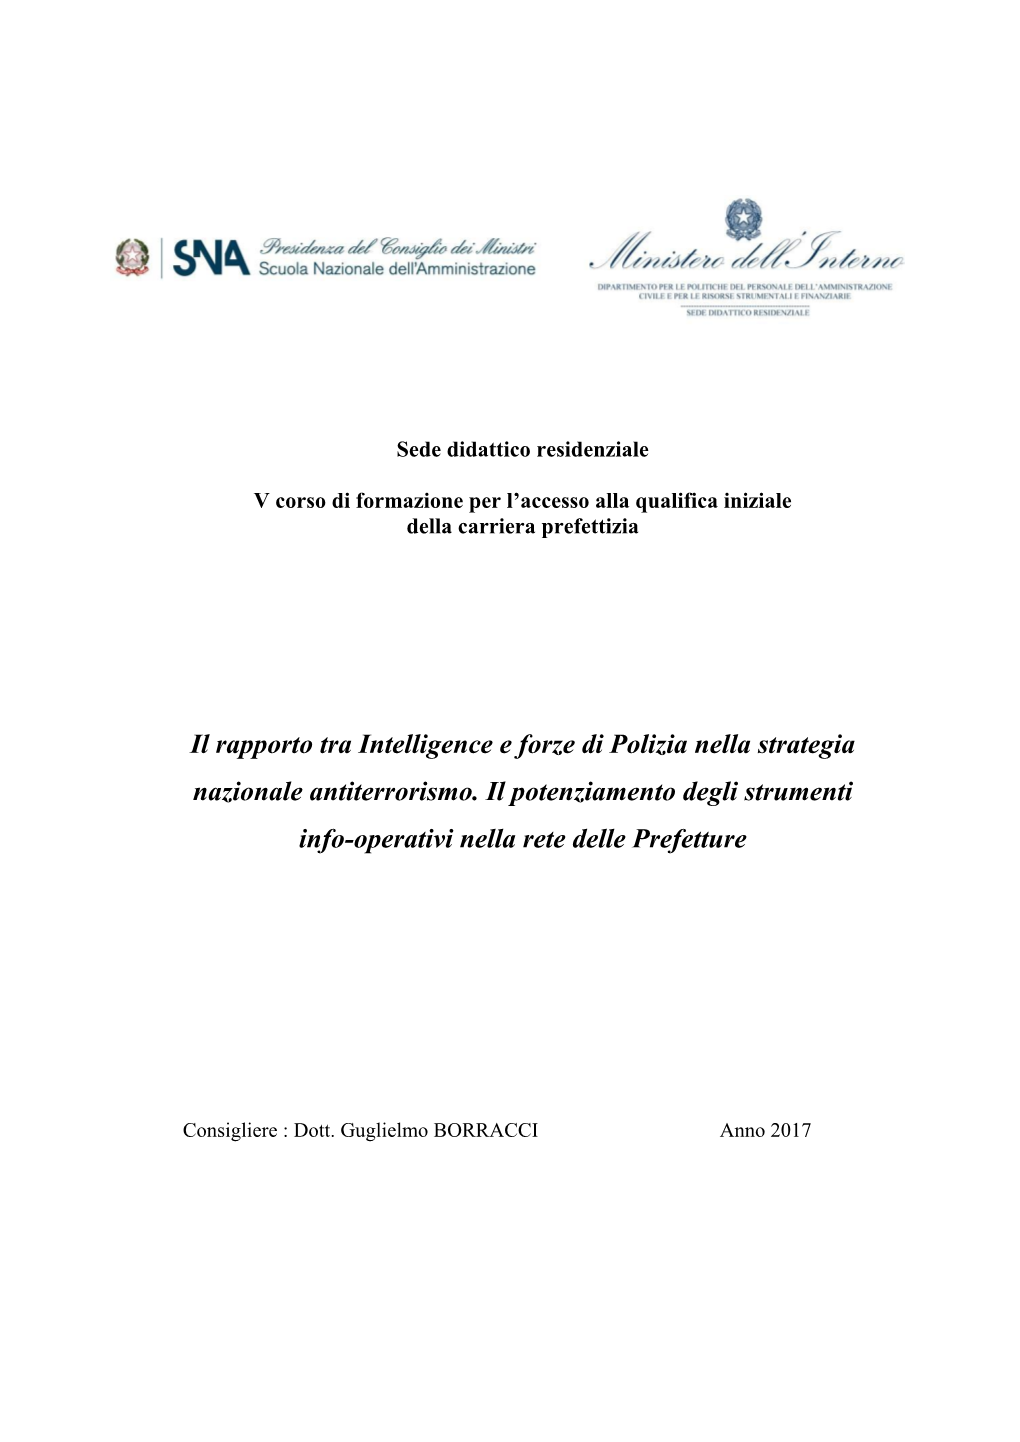 Il Rapporto Tra Intelligence E Forze Di Polizia Nella Strategia Nazionale Antiterrorismo